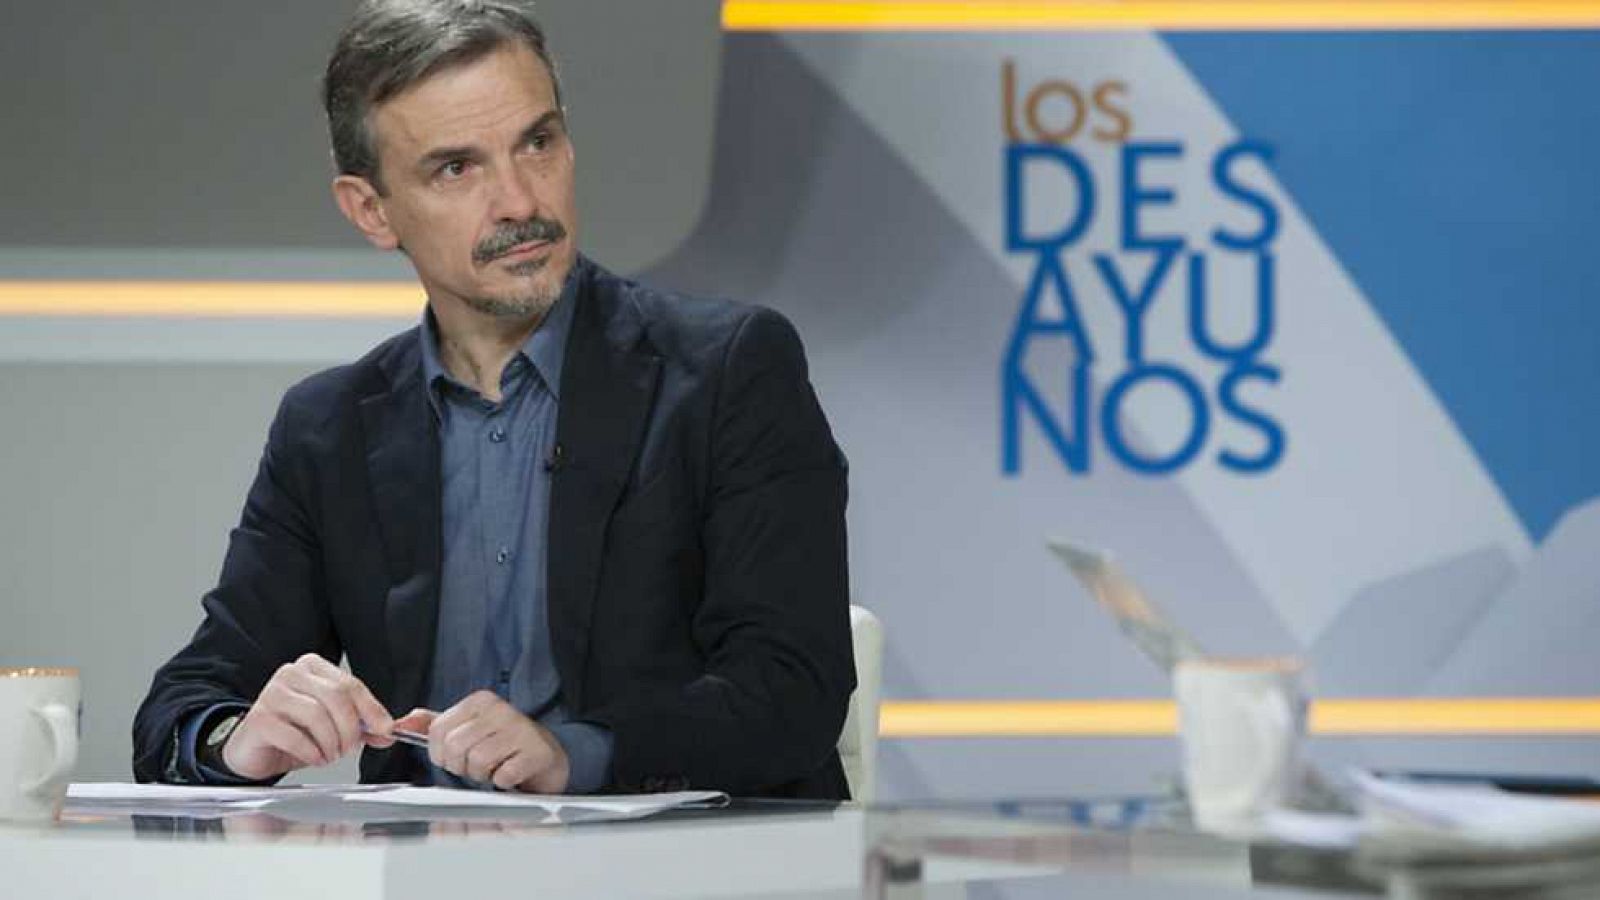 Los desayunos de TVE - José Manuel López, diputado de Podemos en la Asamblea de Madrid